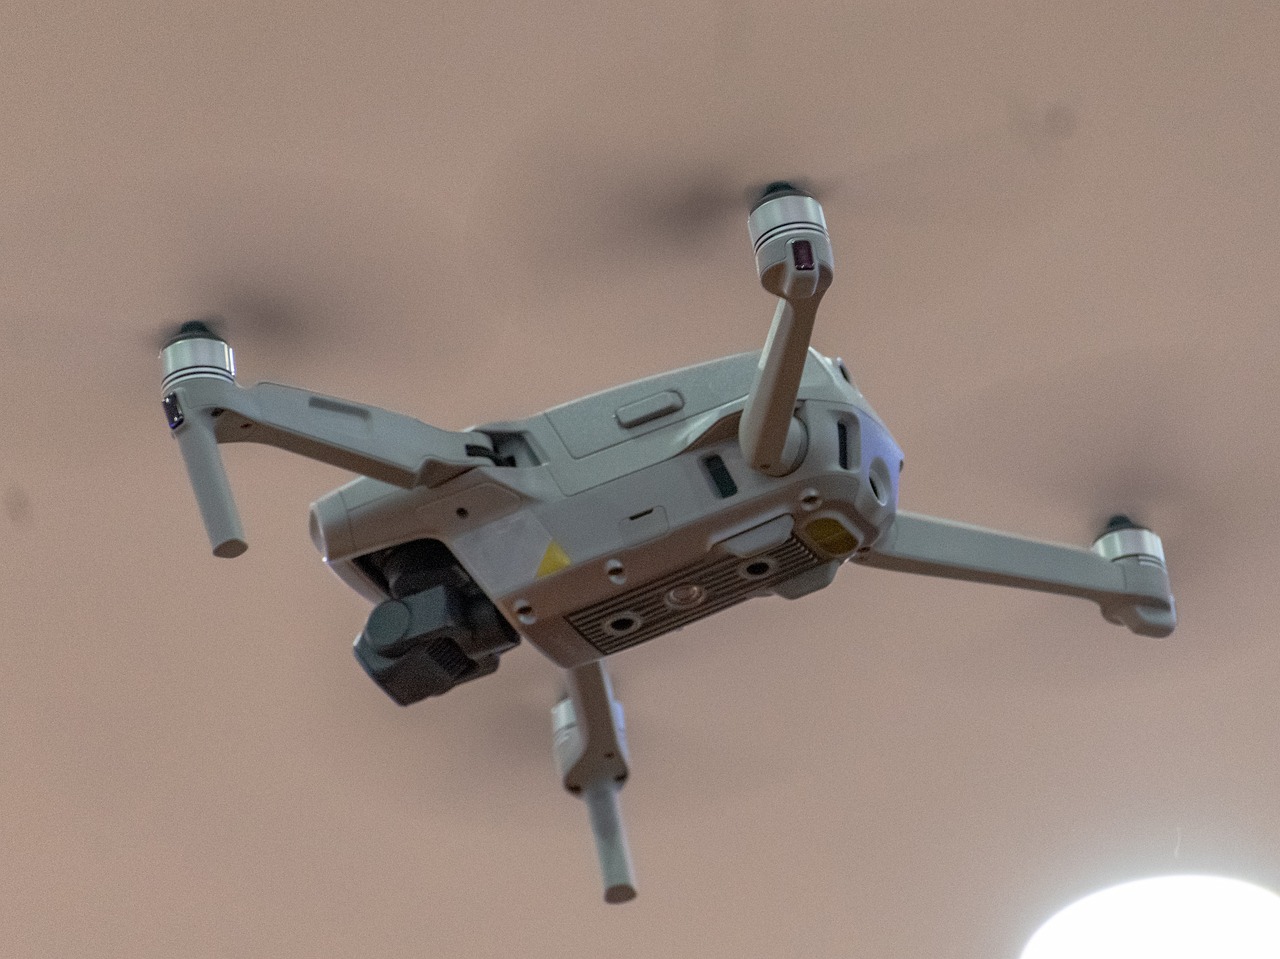 dron, drone, aerial-7148861.jpg